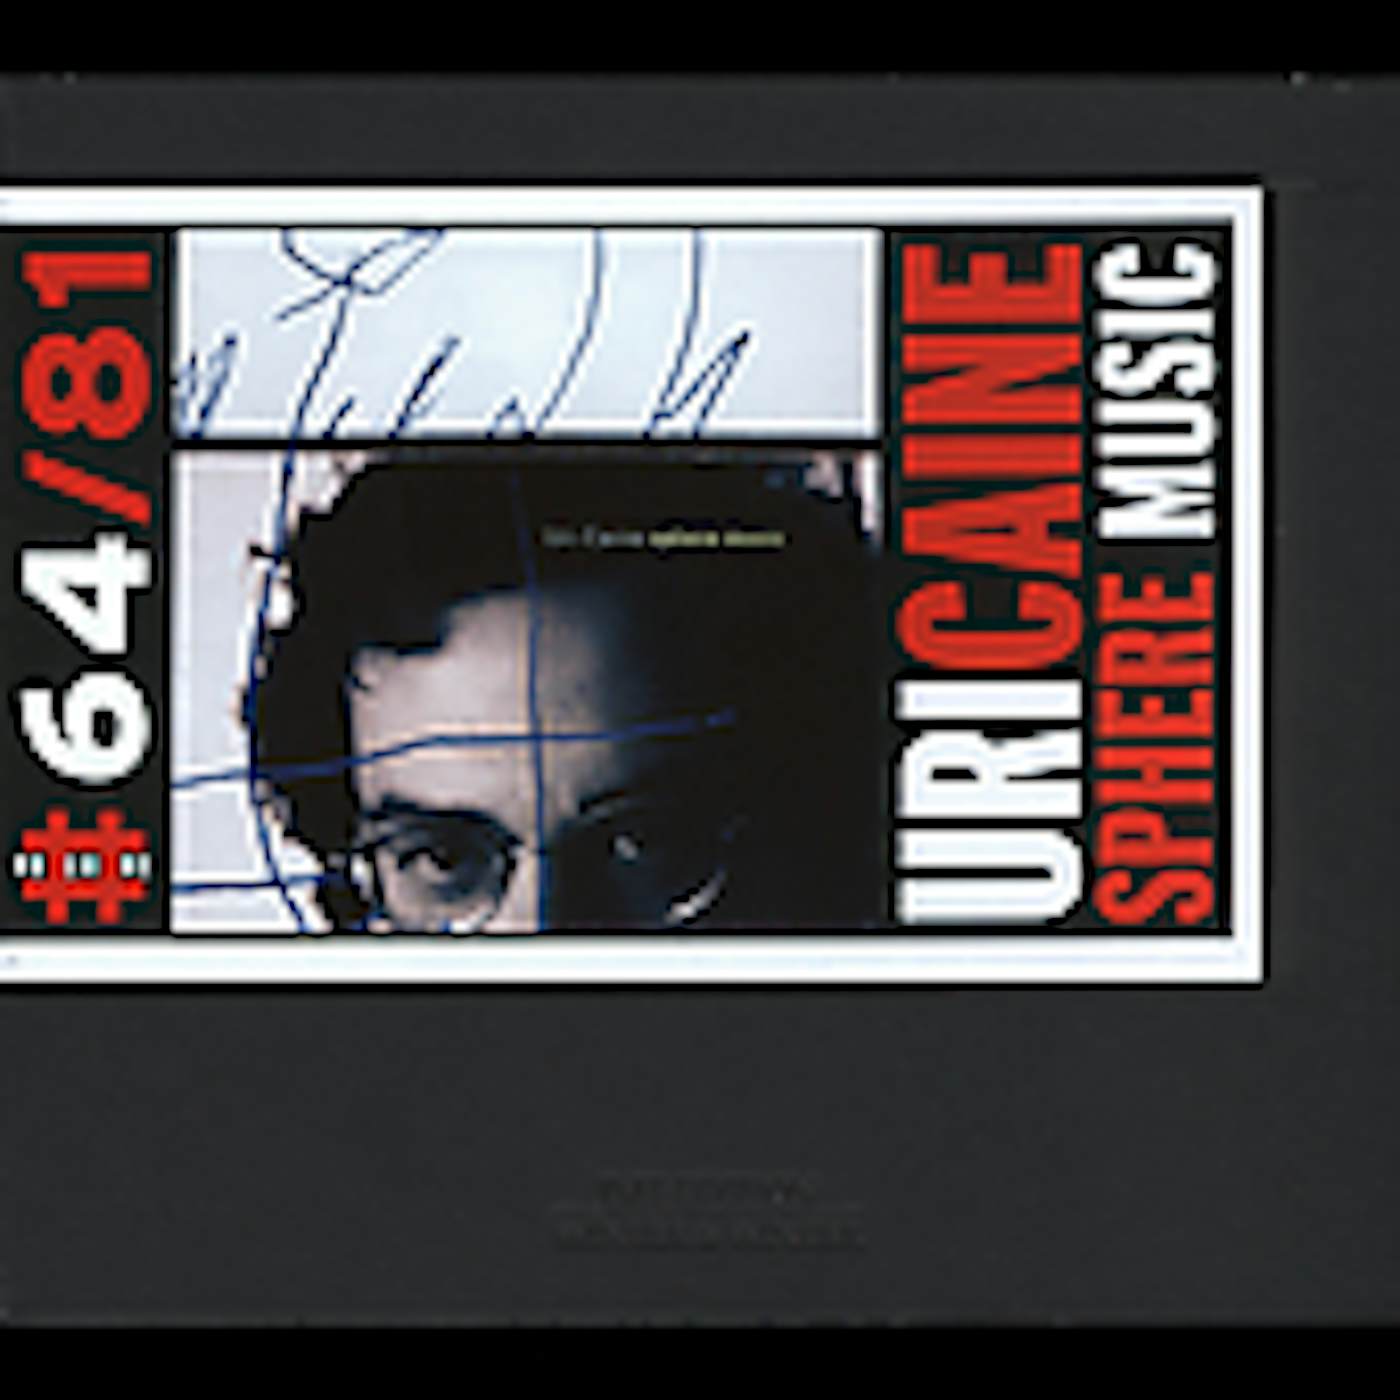 Uri Caine SPHERE MUSIC CD